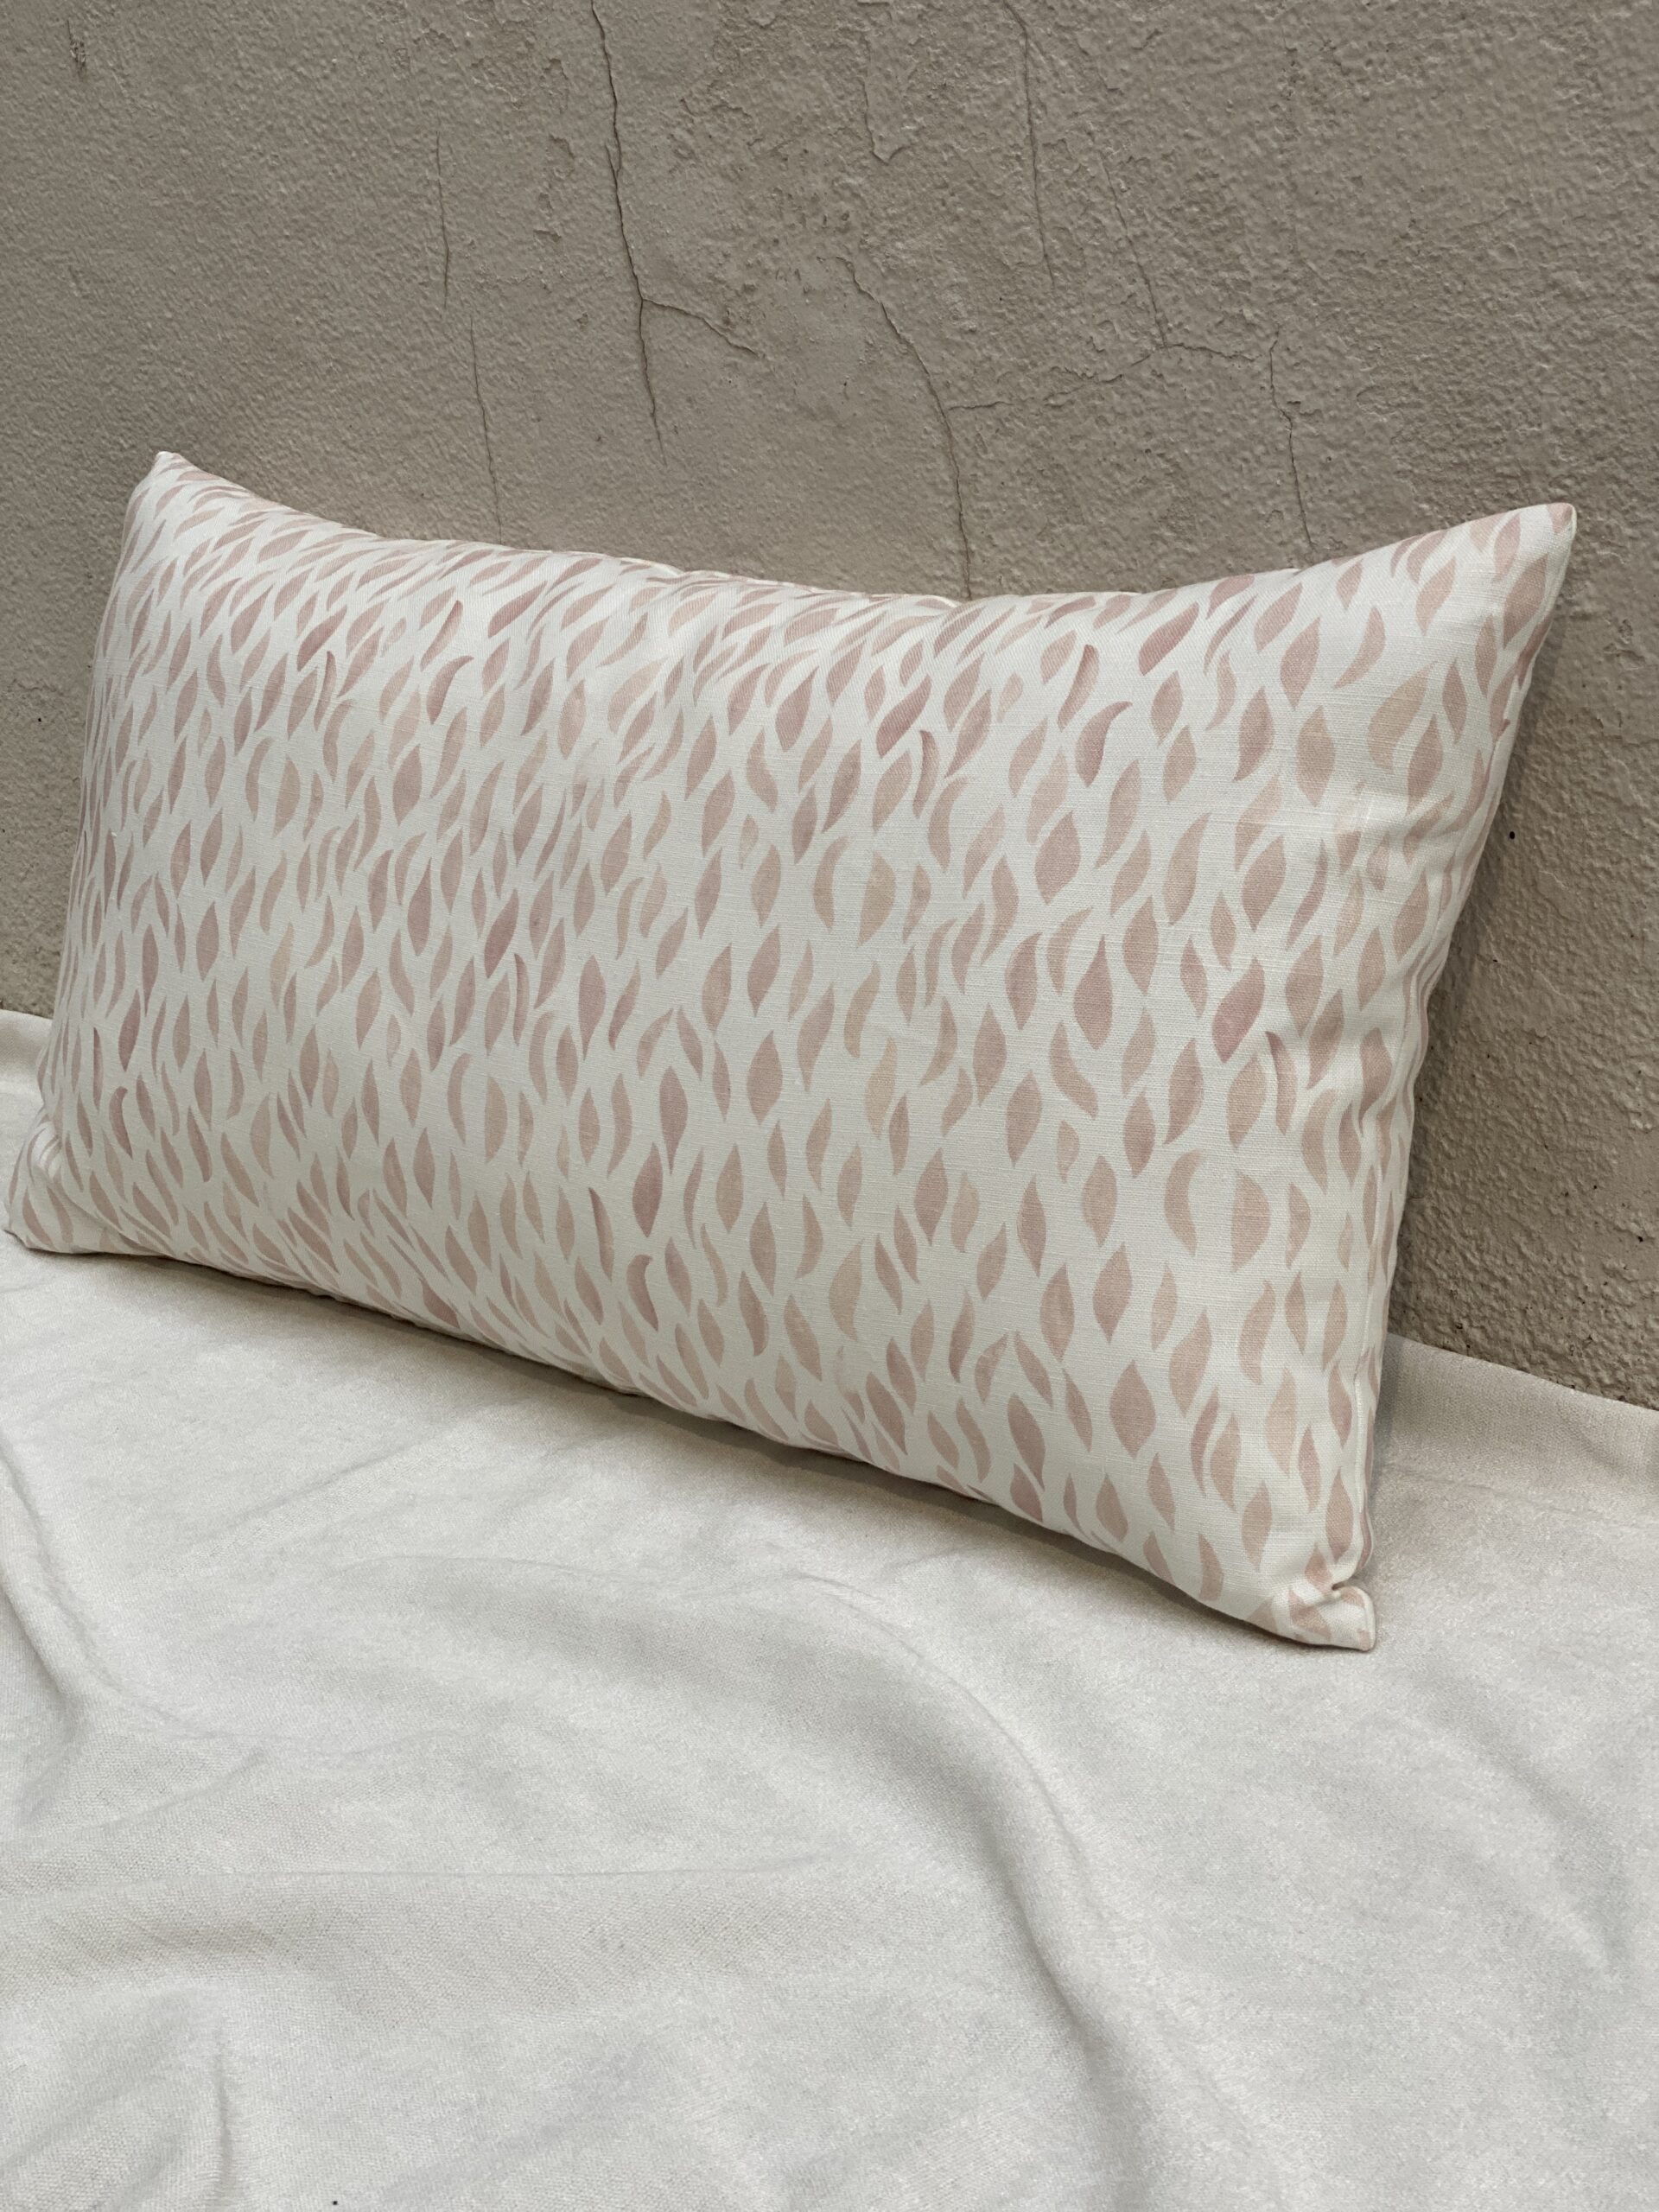 Rebecca Atwood Lumbar Pillow